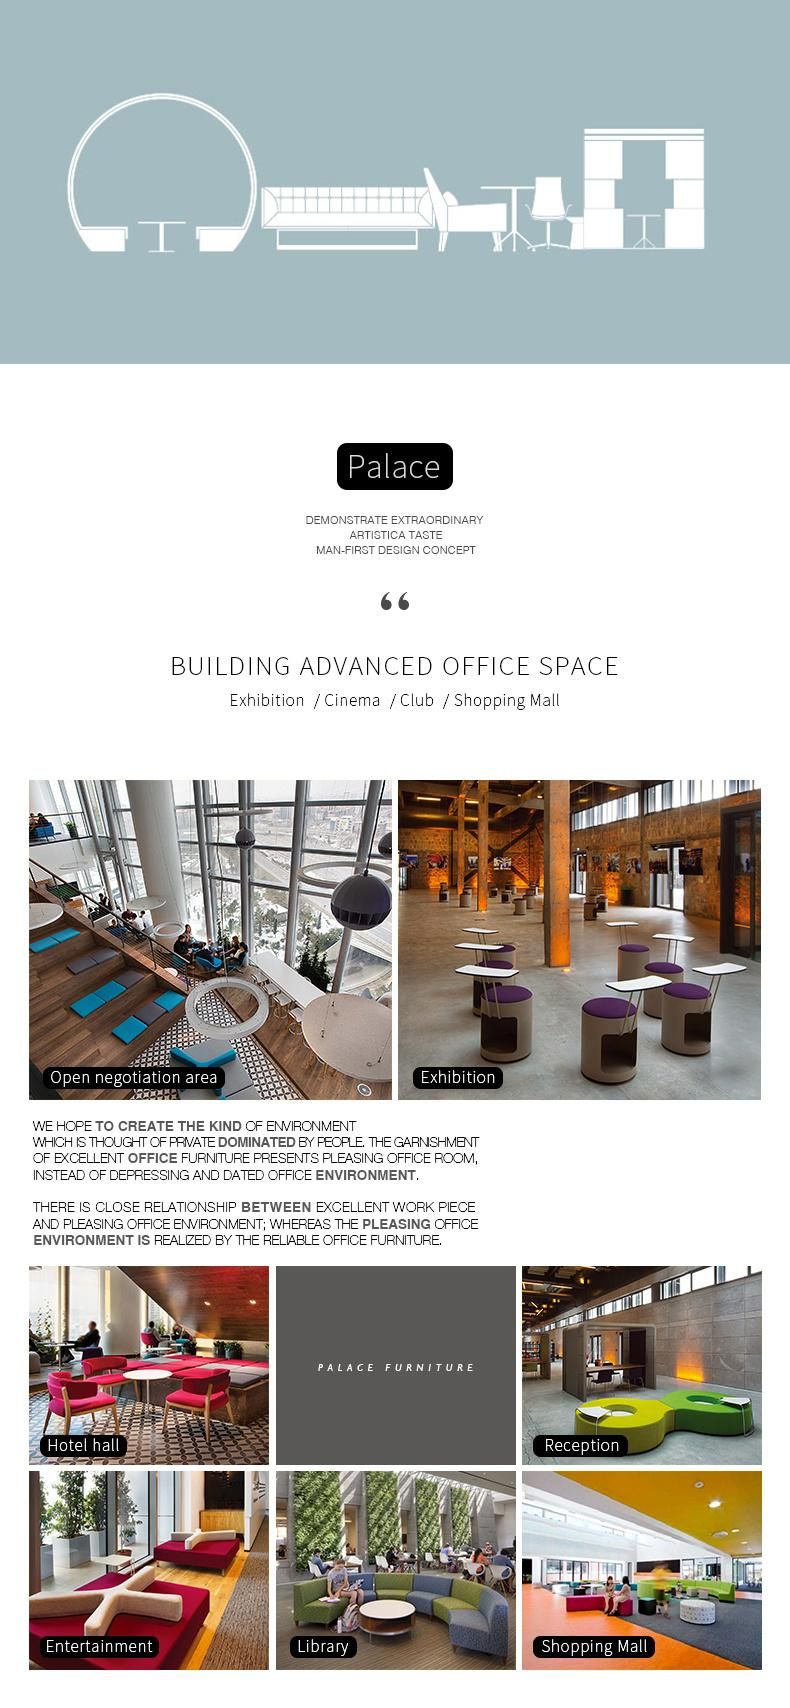 European Style Executive Furniture Corner Lounge Fabric U Shape Sectional Office Sofa